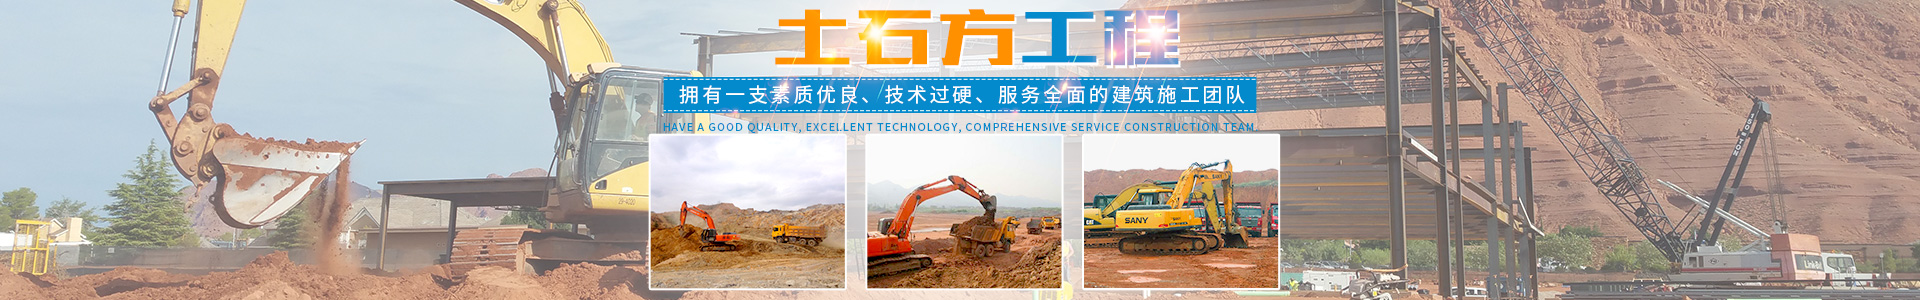 邵陽市南方建設工程有限公司_市政工程|房屋工程|土石方工程